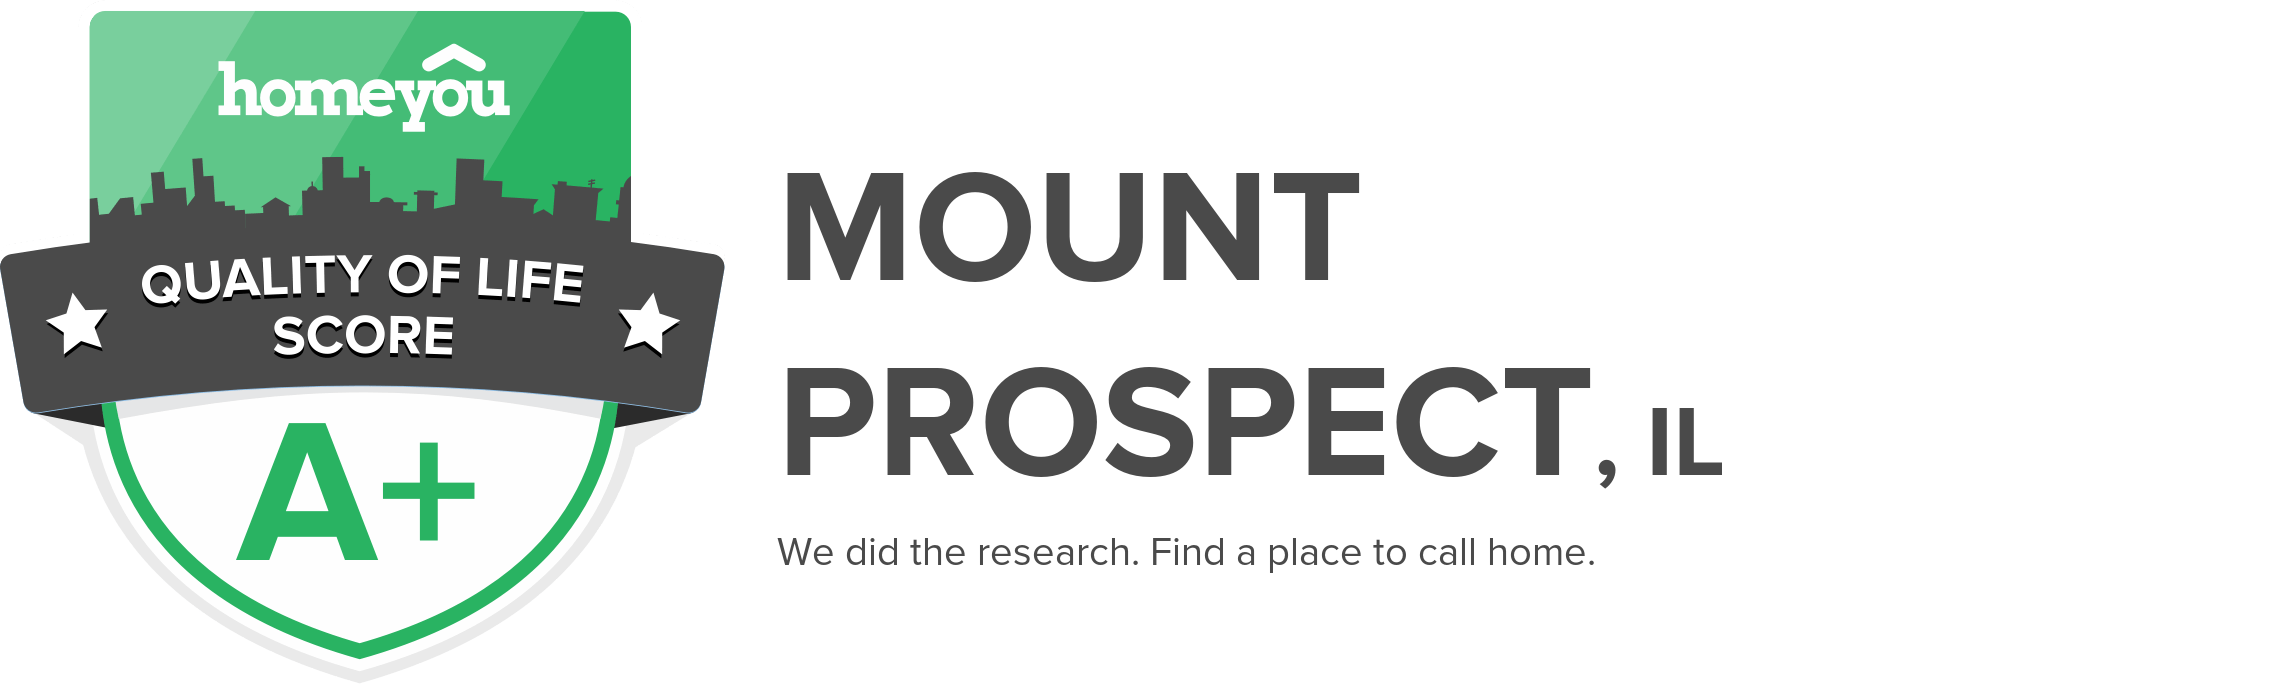 Mount Prospect, IL